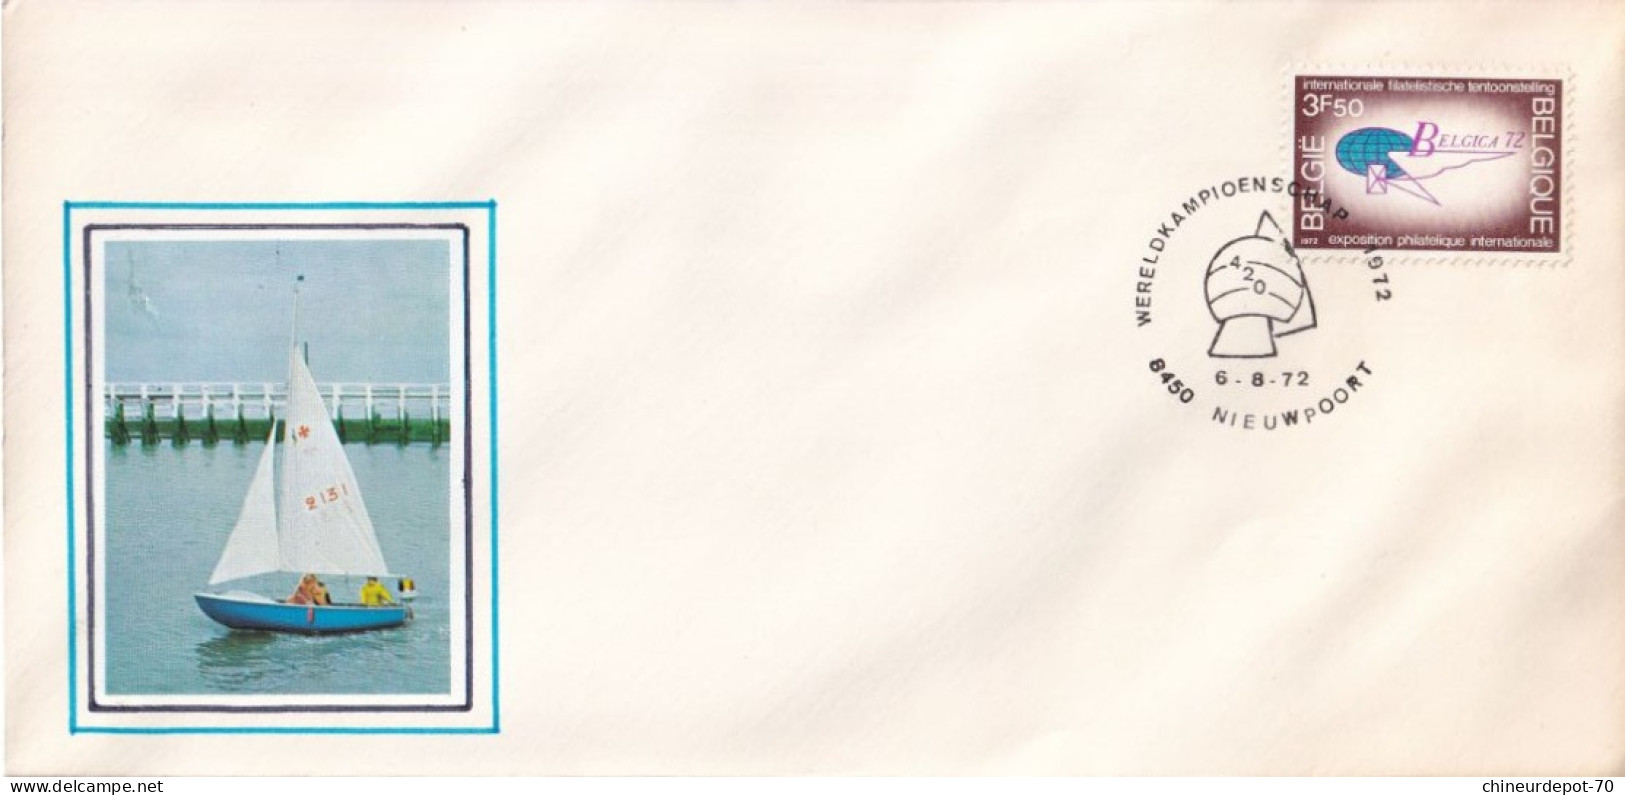 Enveloppe Oblitérée Expositions Philatéliques Internationales 1972 - Covers & Documents